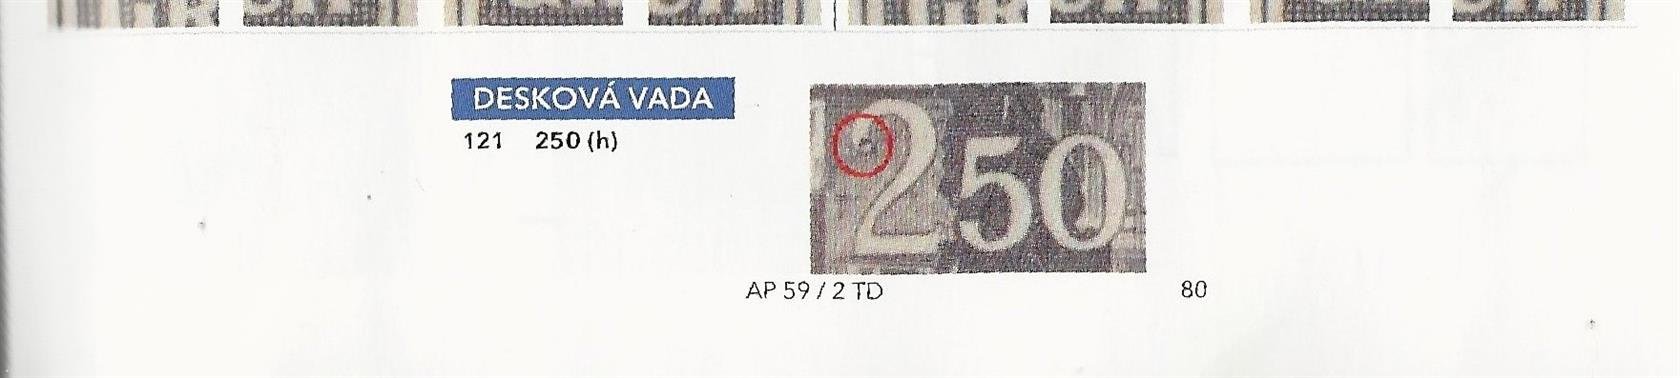 121  PA 100, chrám sv. Víta, fialová 2,50 K, TD 2, lehce povoleno v perforaci v přeložení